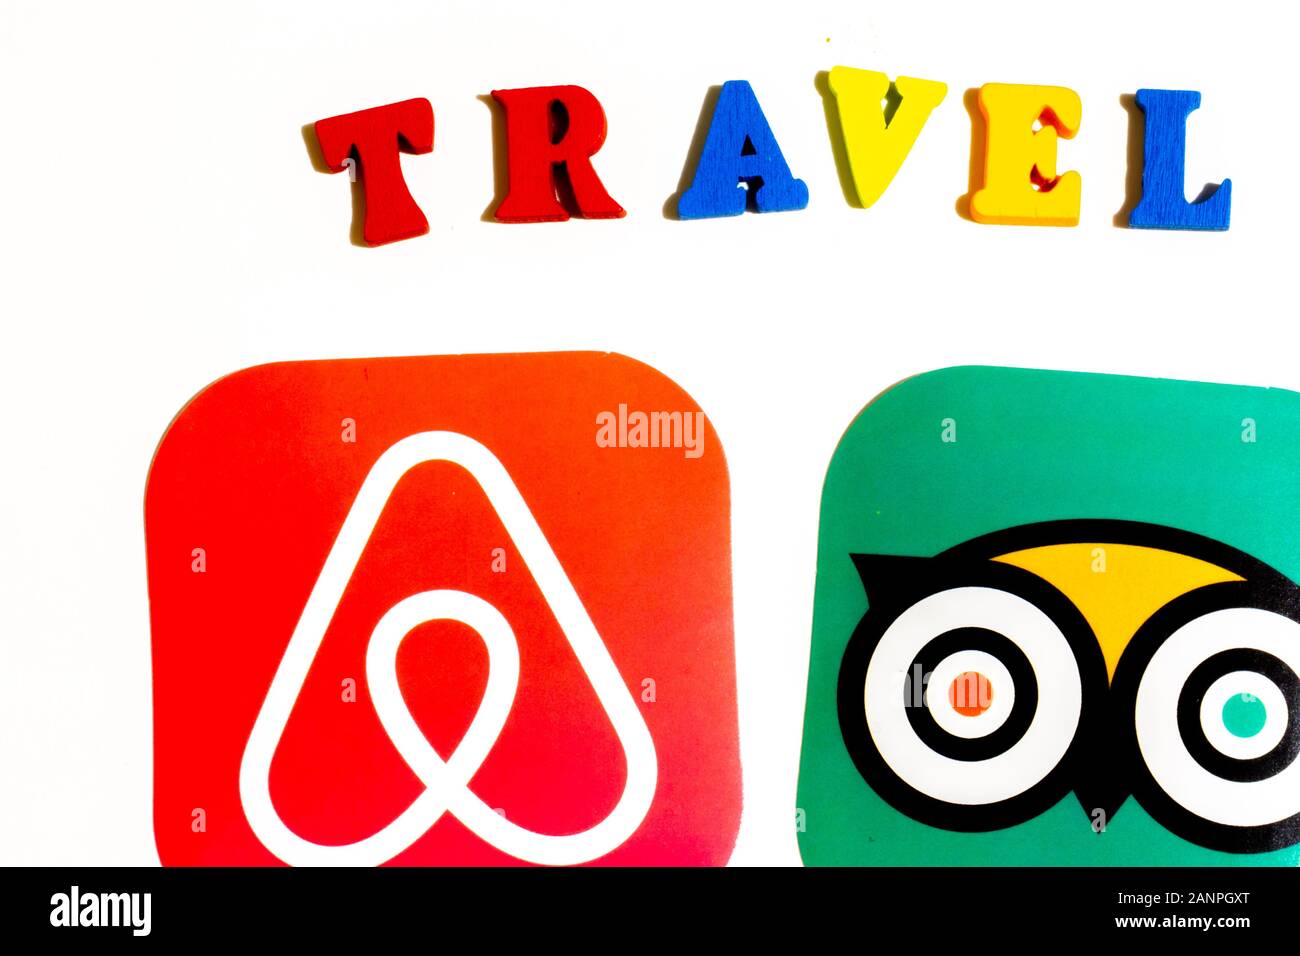 Los Angeles, Californie, États-Unis - 17 janvier 2020: Concept d'applications de voyage. Airbnb et logo de TripAdvisor sur fond blanc, éditorial illustratif Banque D'Images